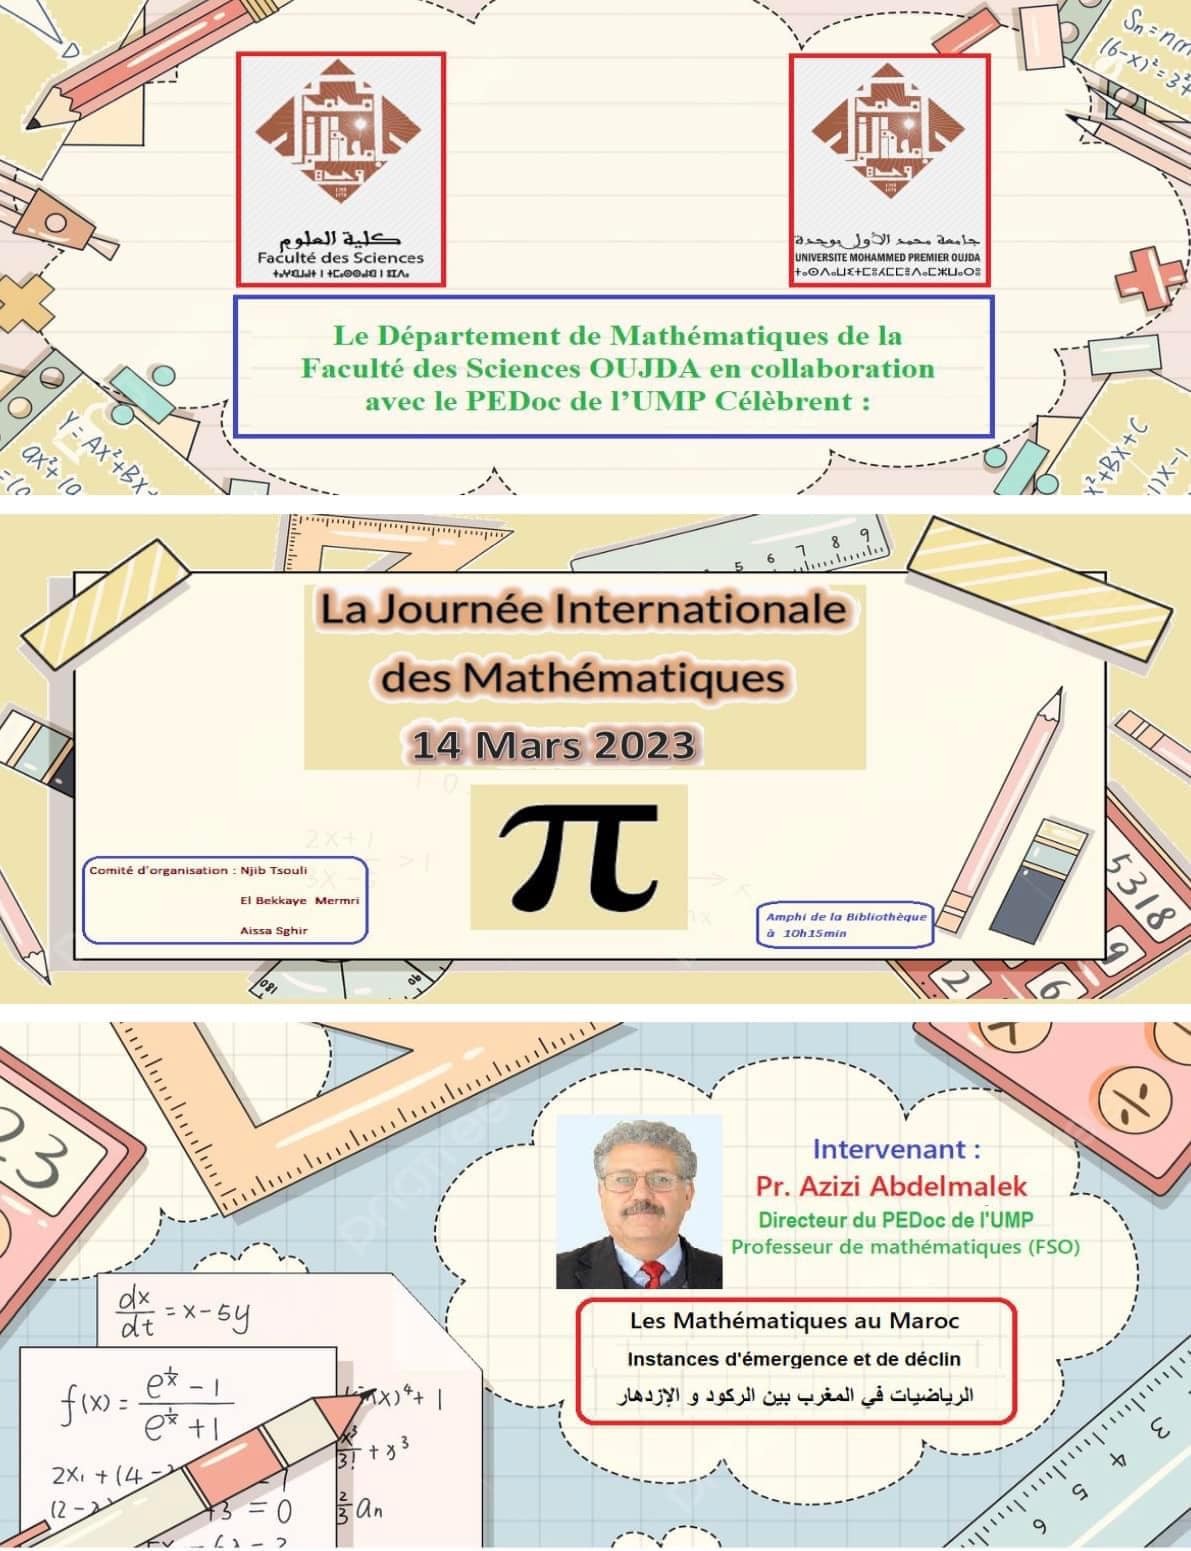 La journée internationale des mathématiques